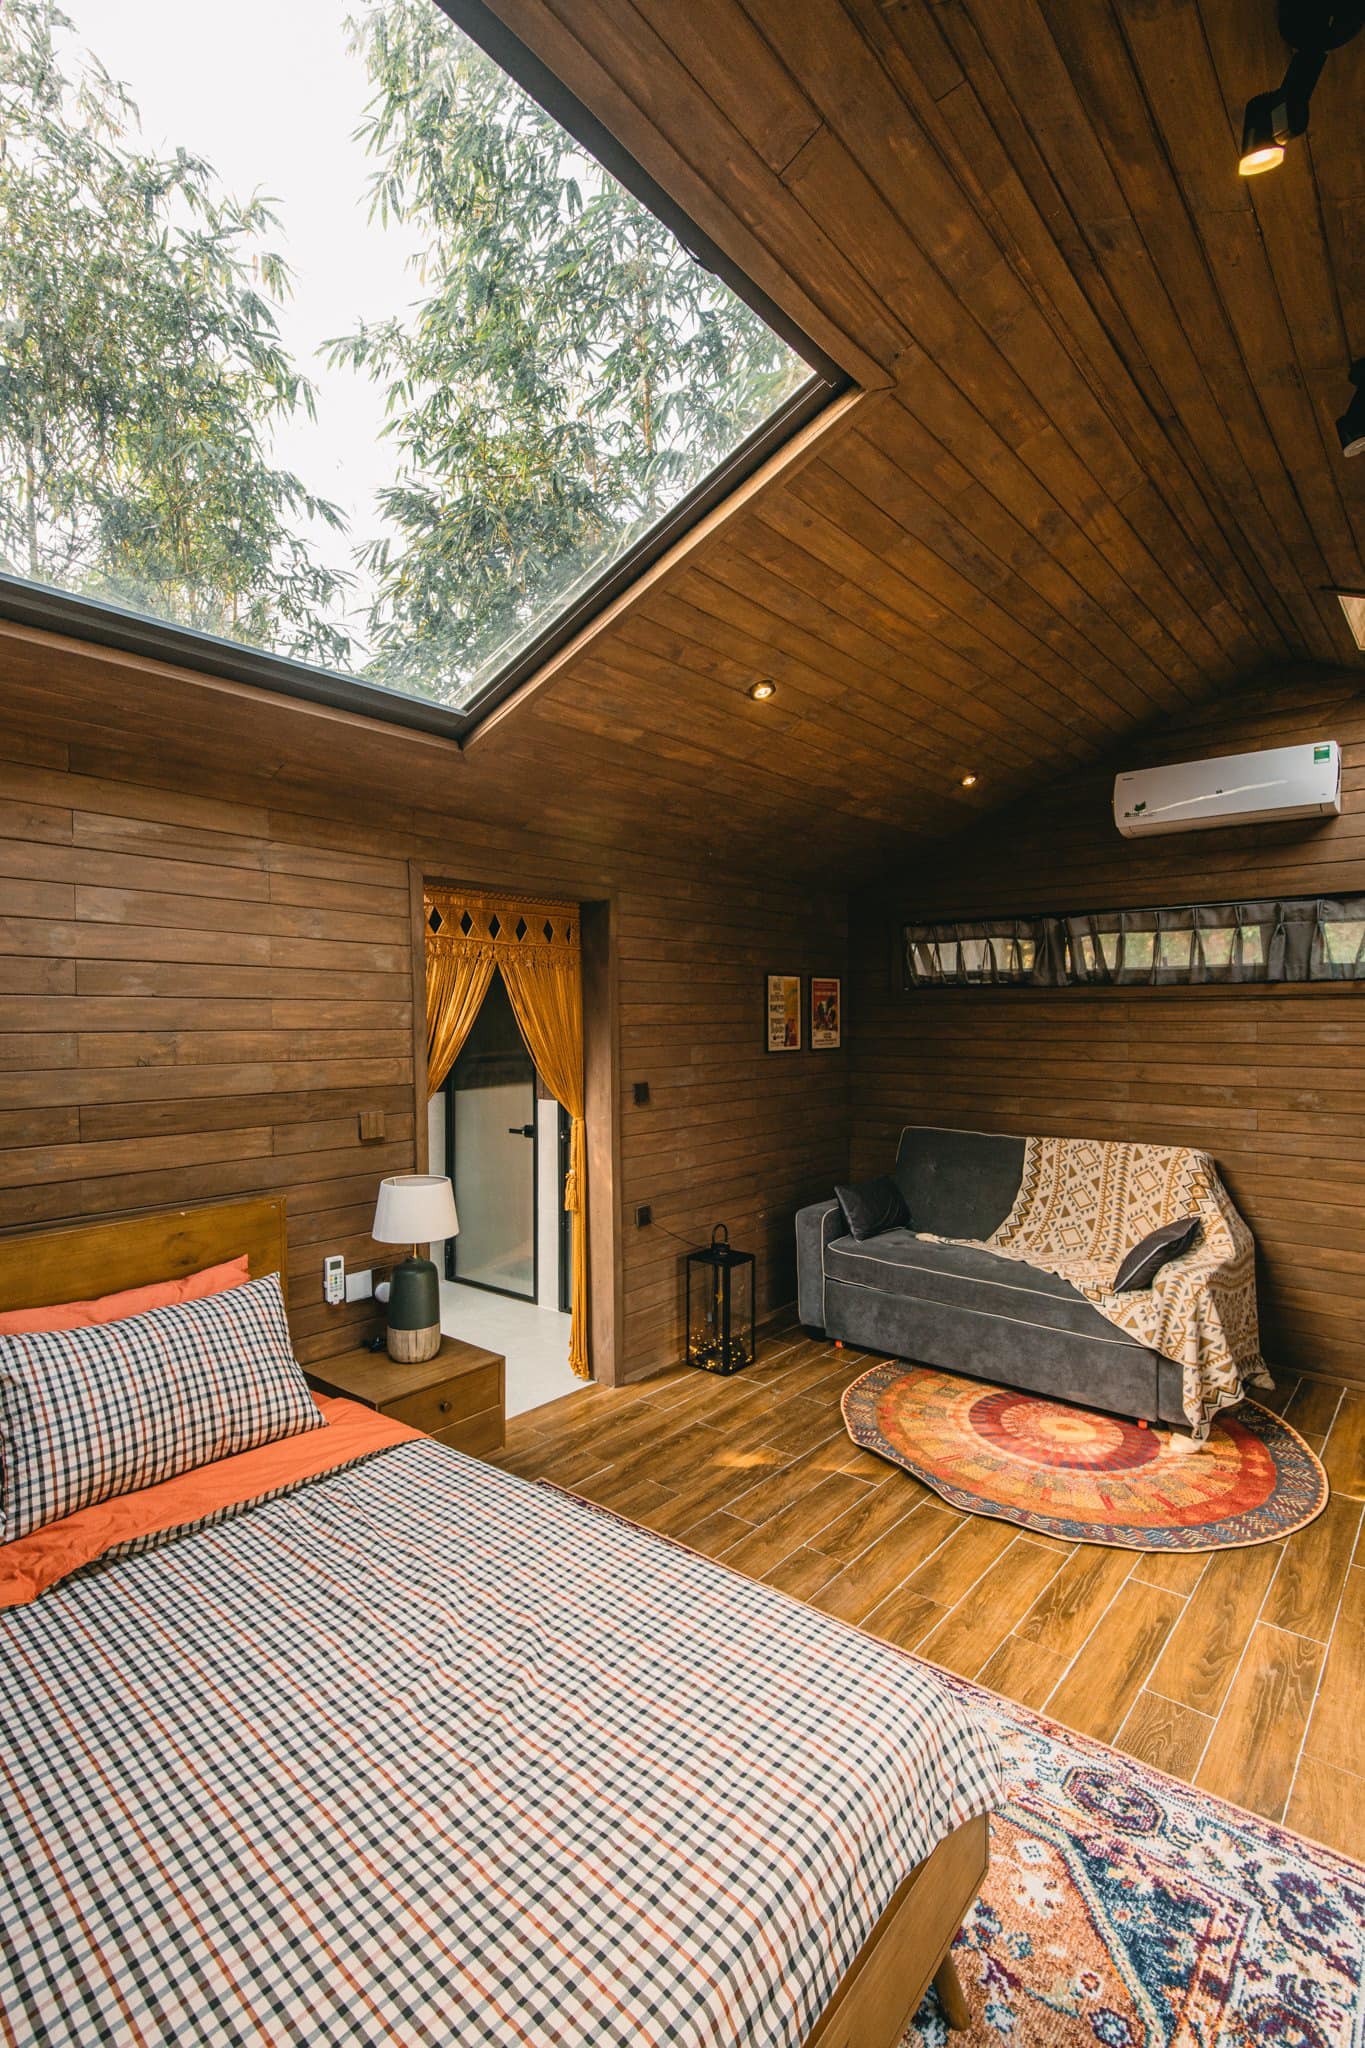 Ngôi nhà bằng gỗ thông nằm giữa rừng núi, ánh sáng len lỏi vào tận giường ngủ